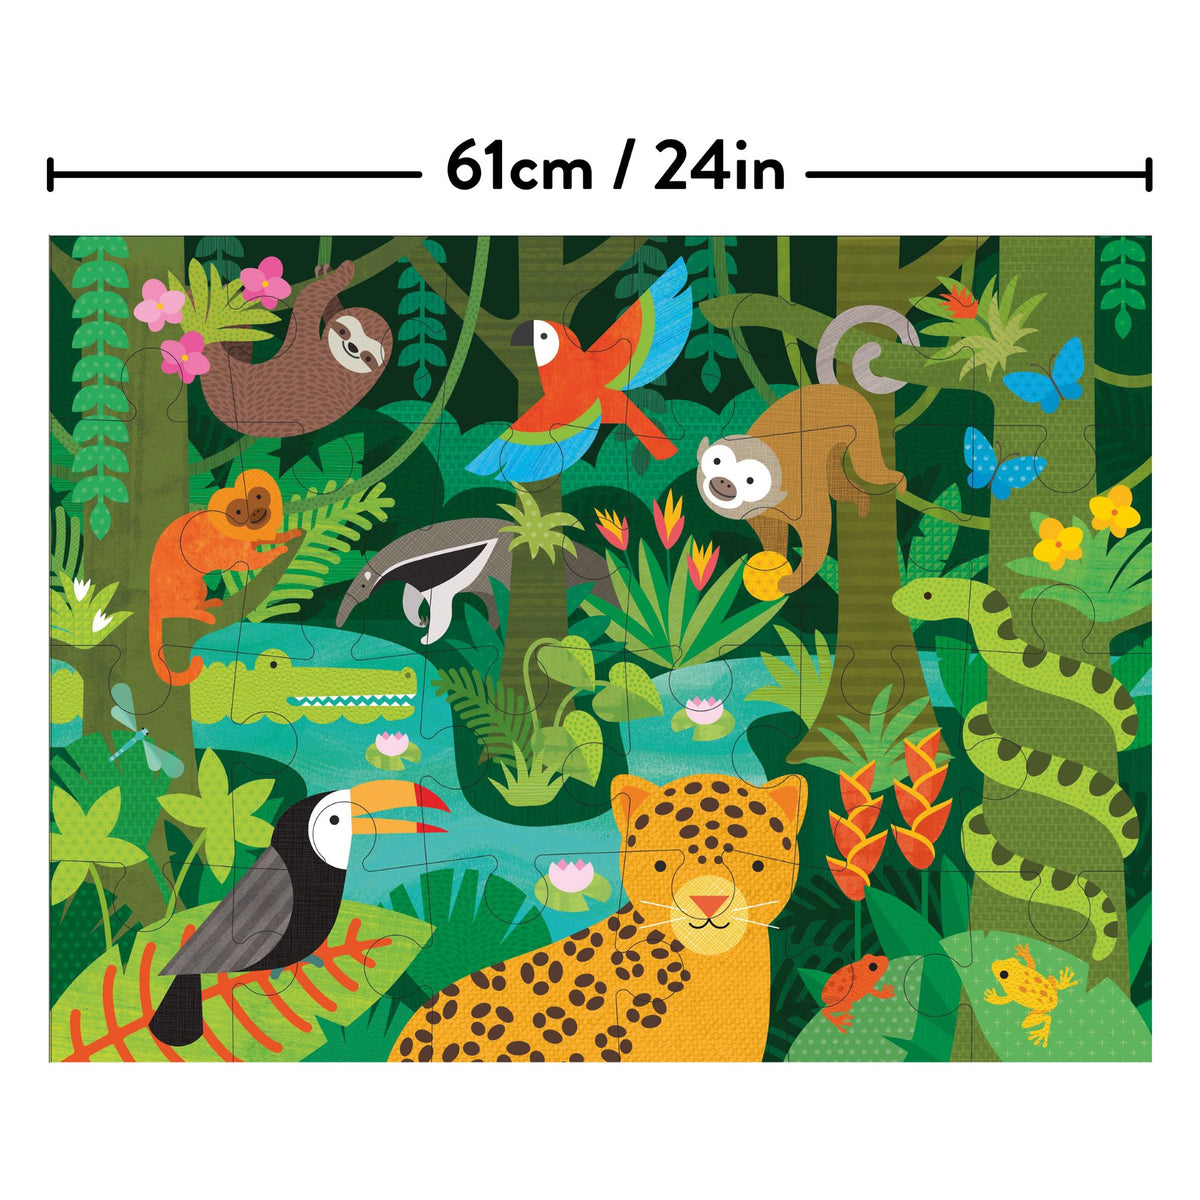 Petit Collage Wild Rainforest Floor Puzzle